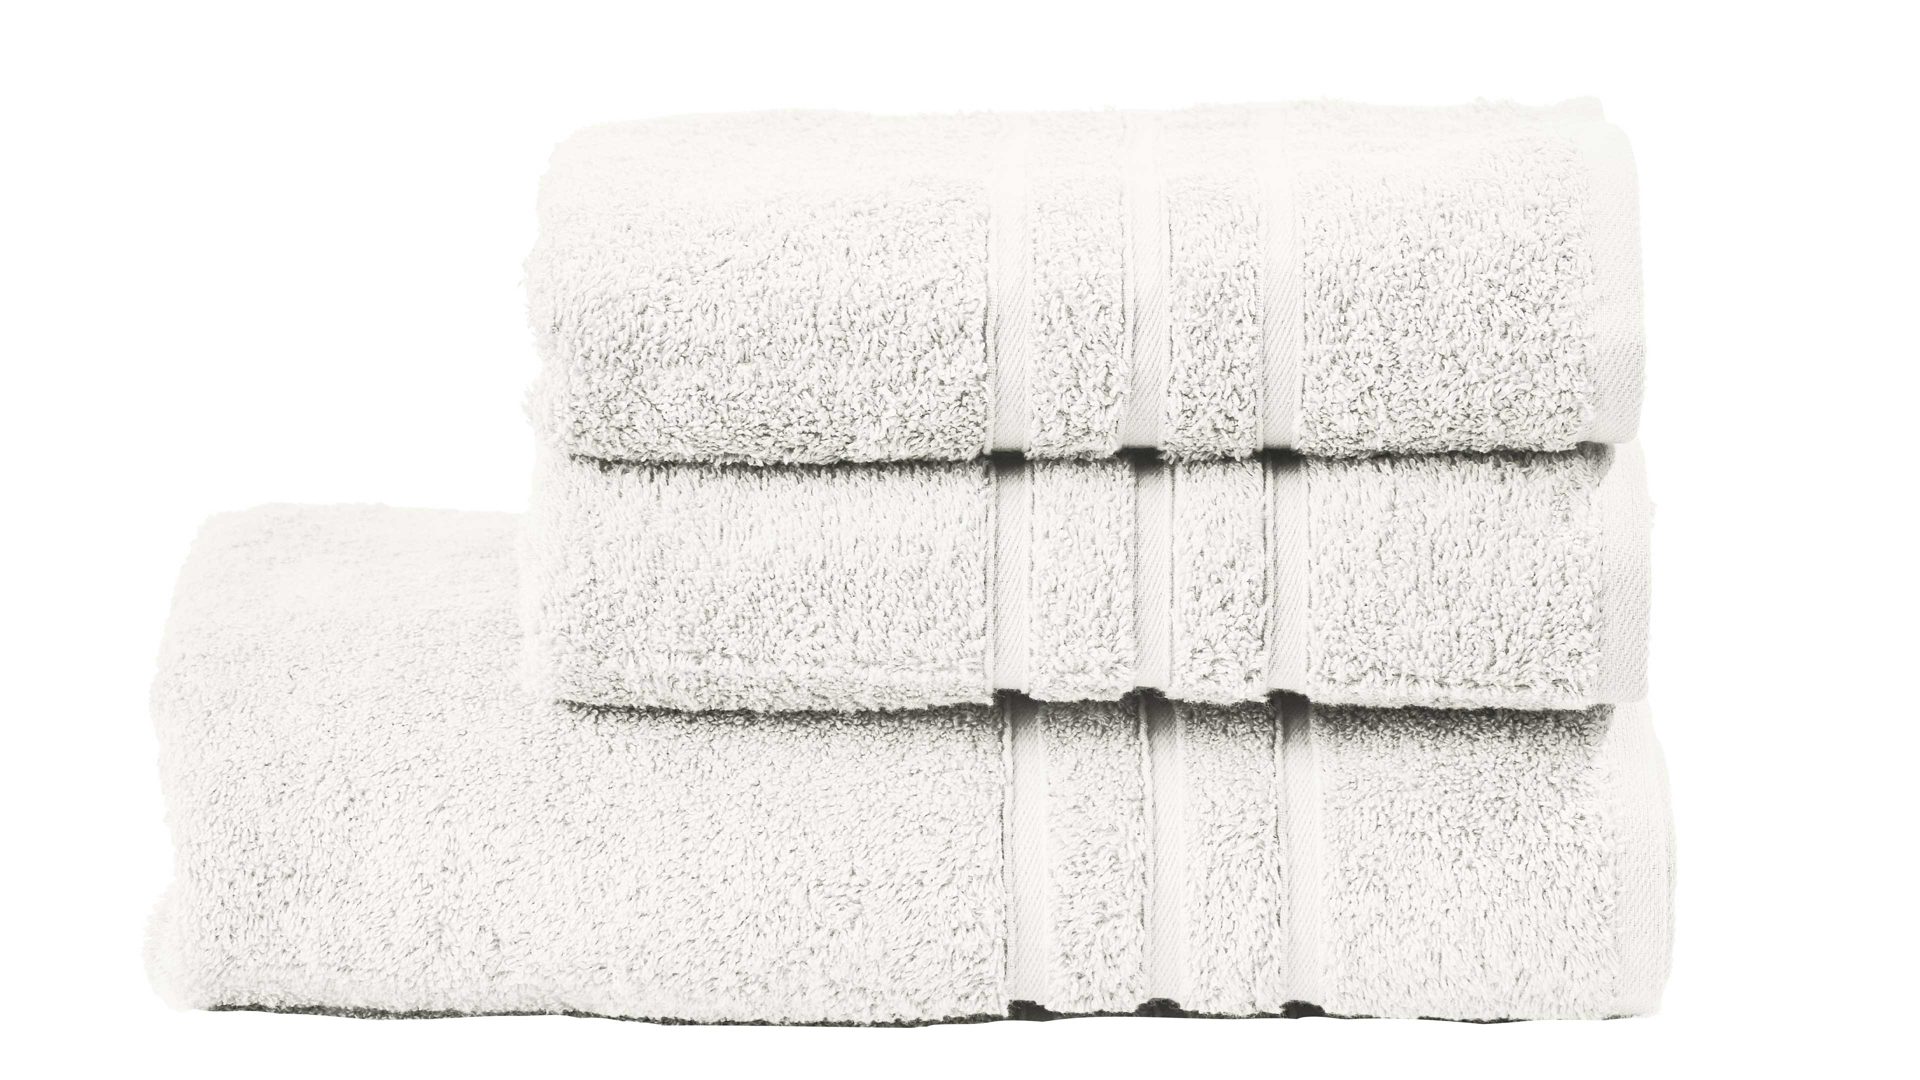 Handtuch-Set Done® by karabel home company aus Stoff in Weiß DONE® Handtuch-Set Daily Uni sternweiße Baumwolle – dreiteilig